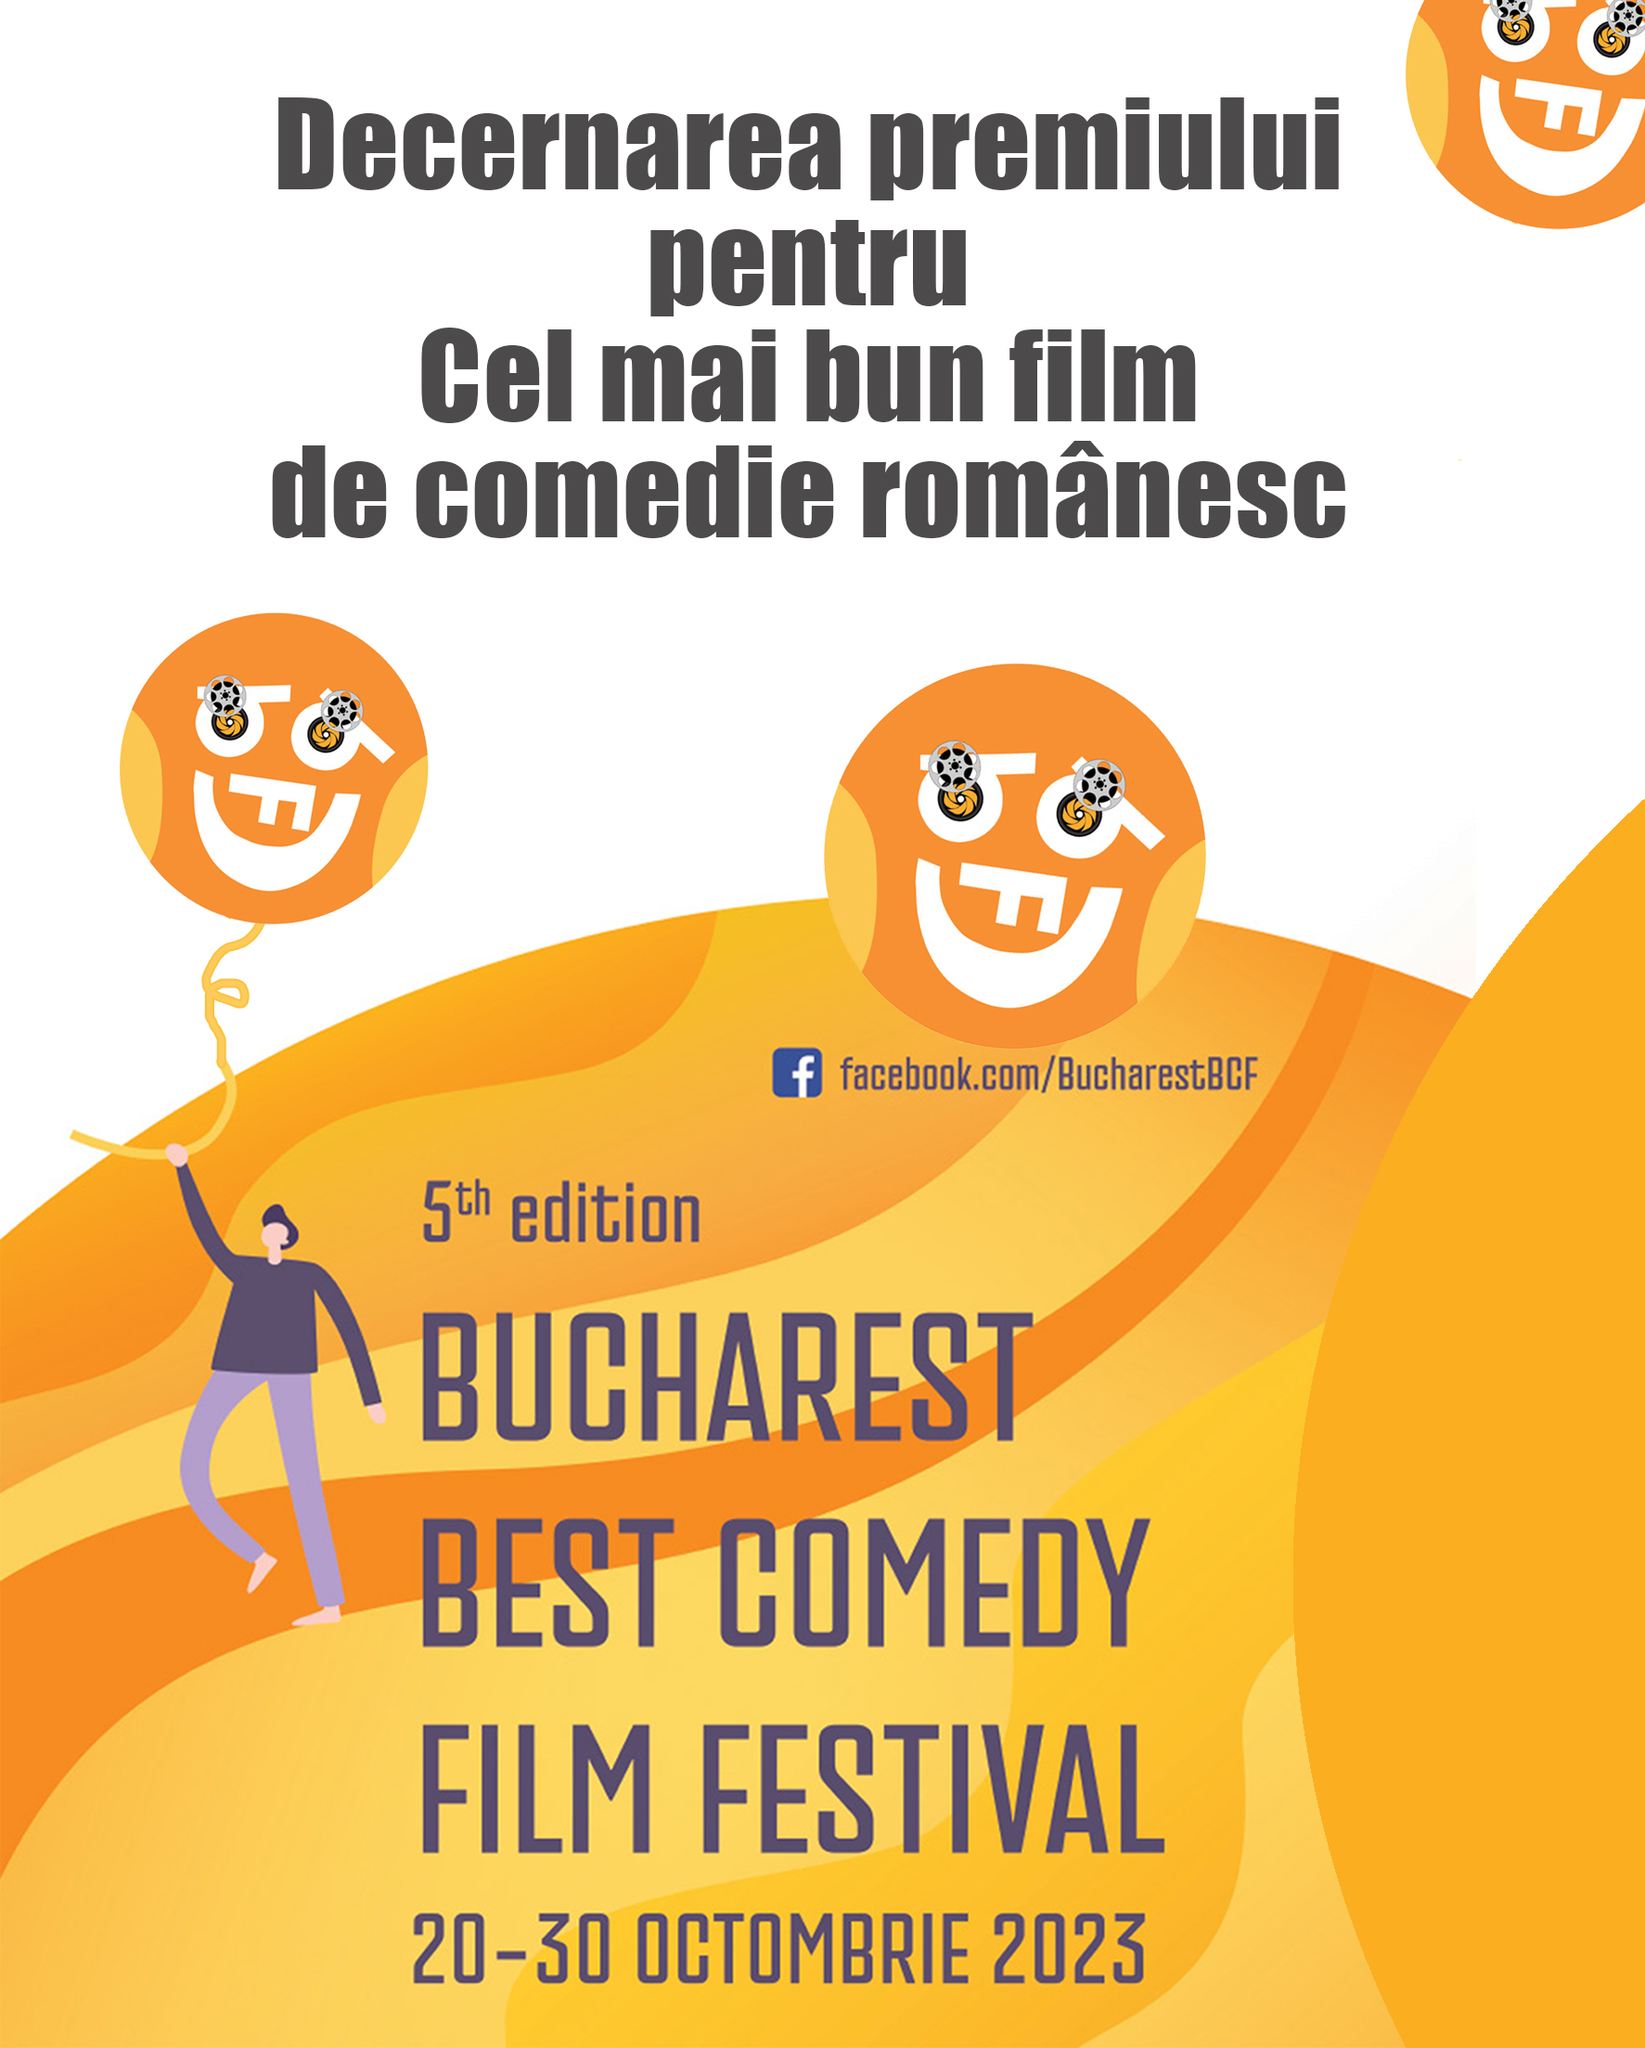 Decernarea premiului pentru Cel mai bun film de comedie românesc